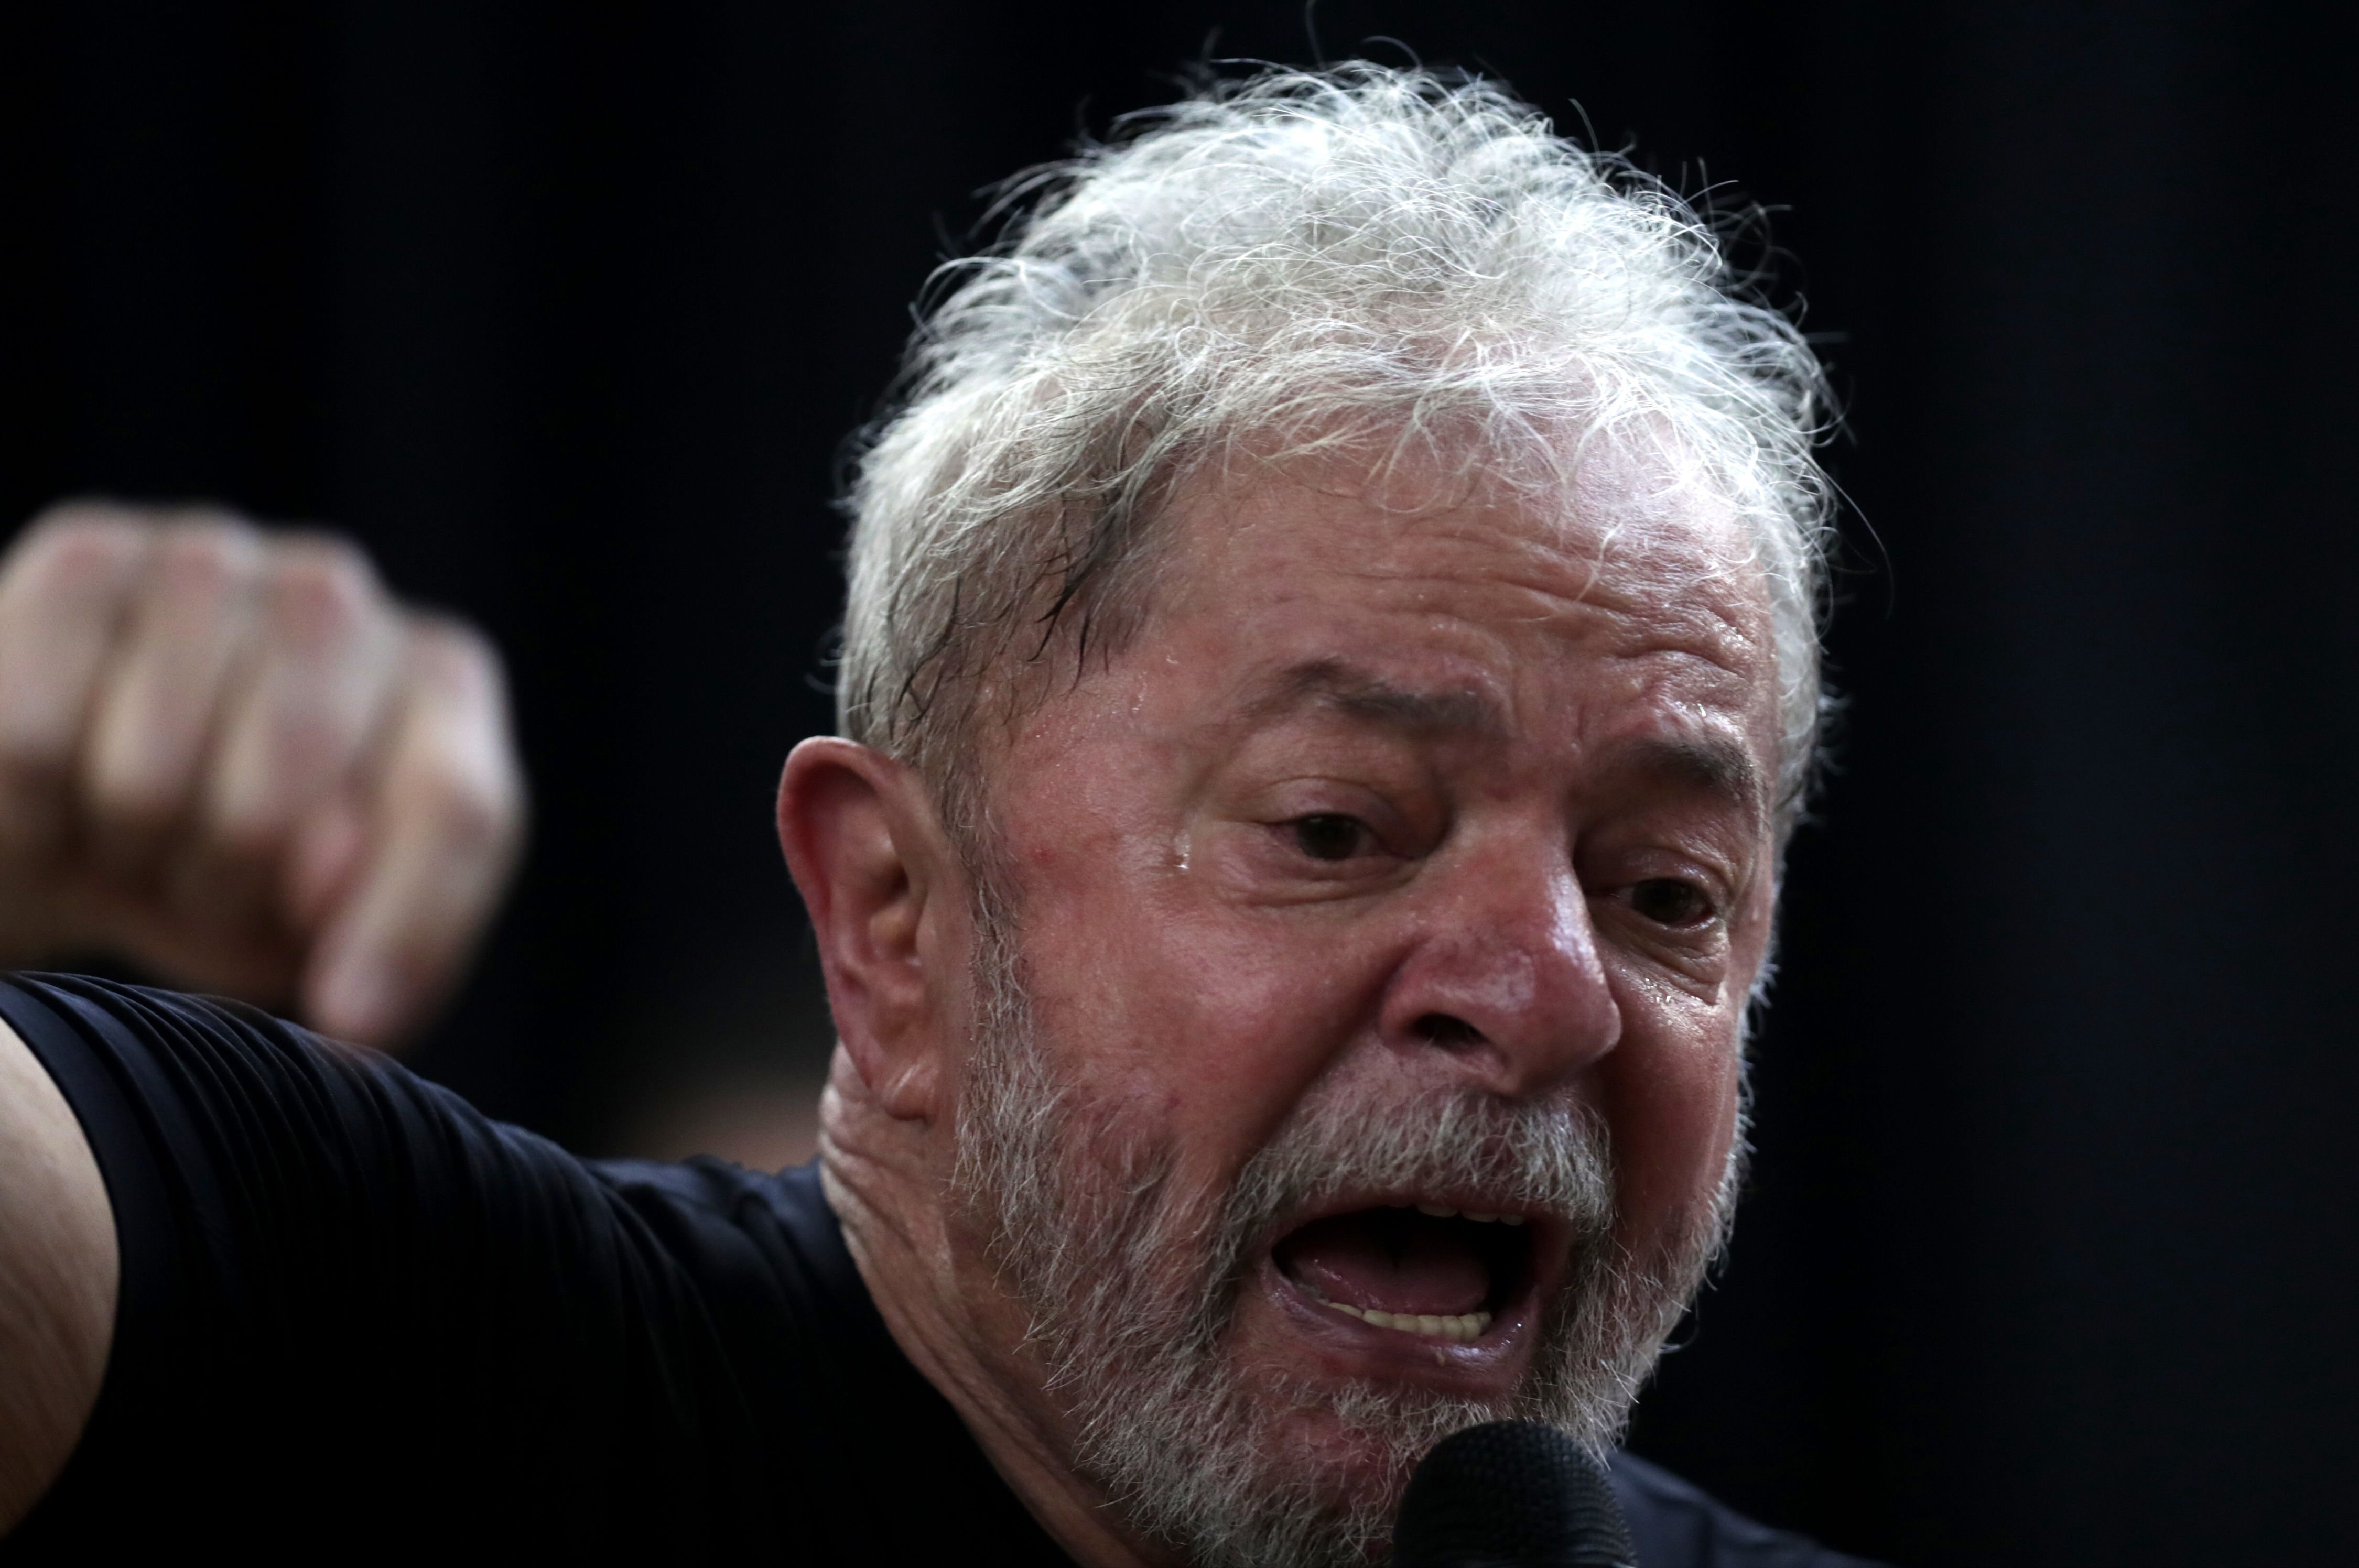 La condemna a presó en segona instància deixa Lula fora de la cursa electoral